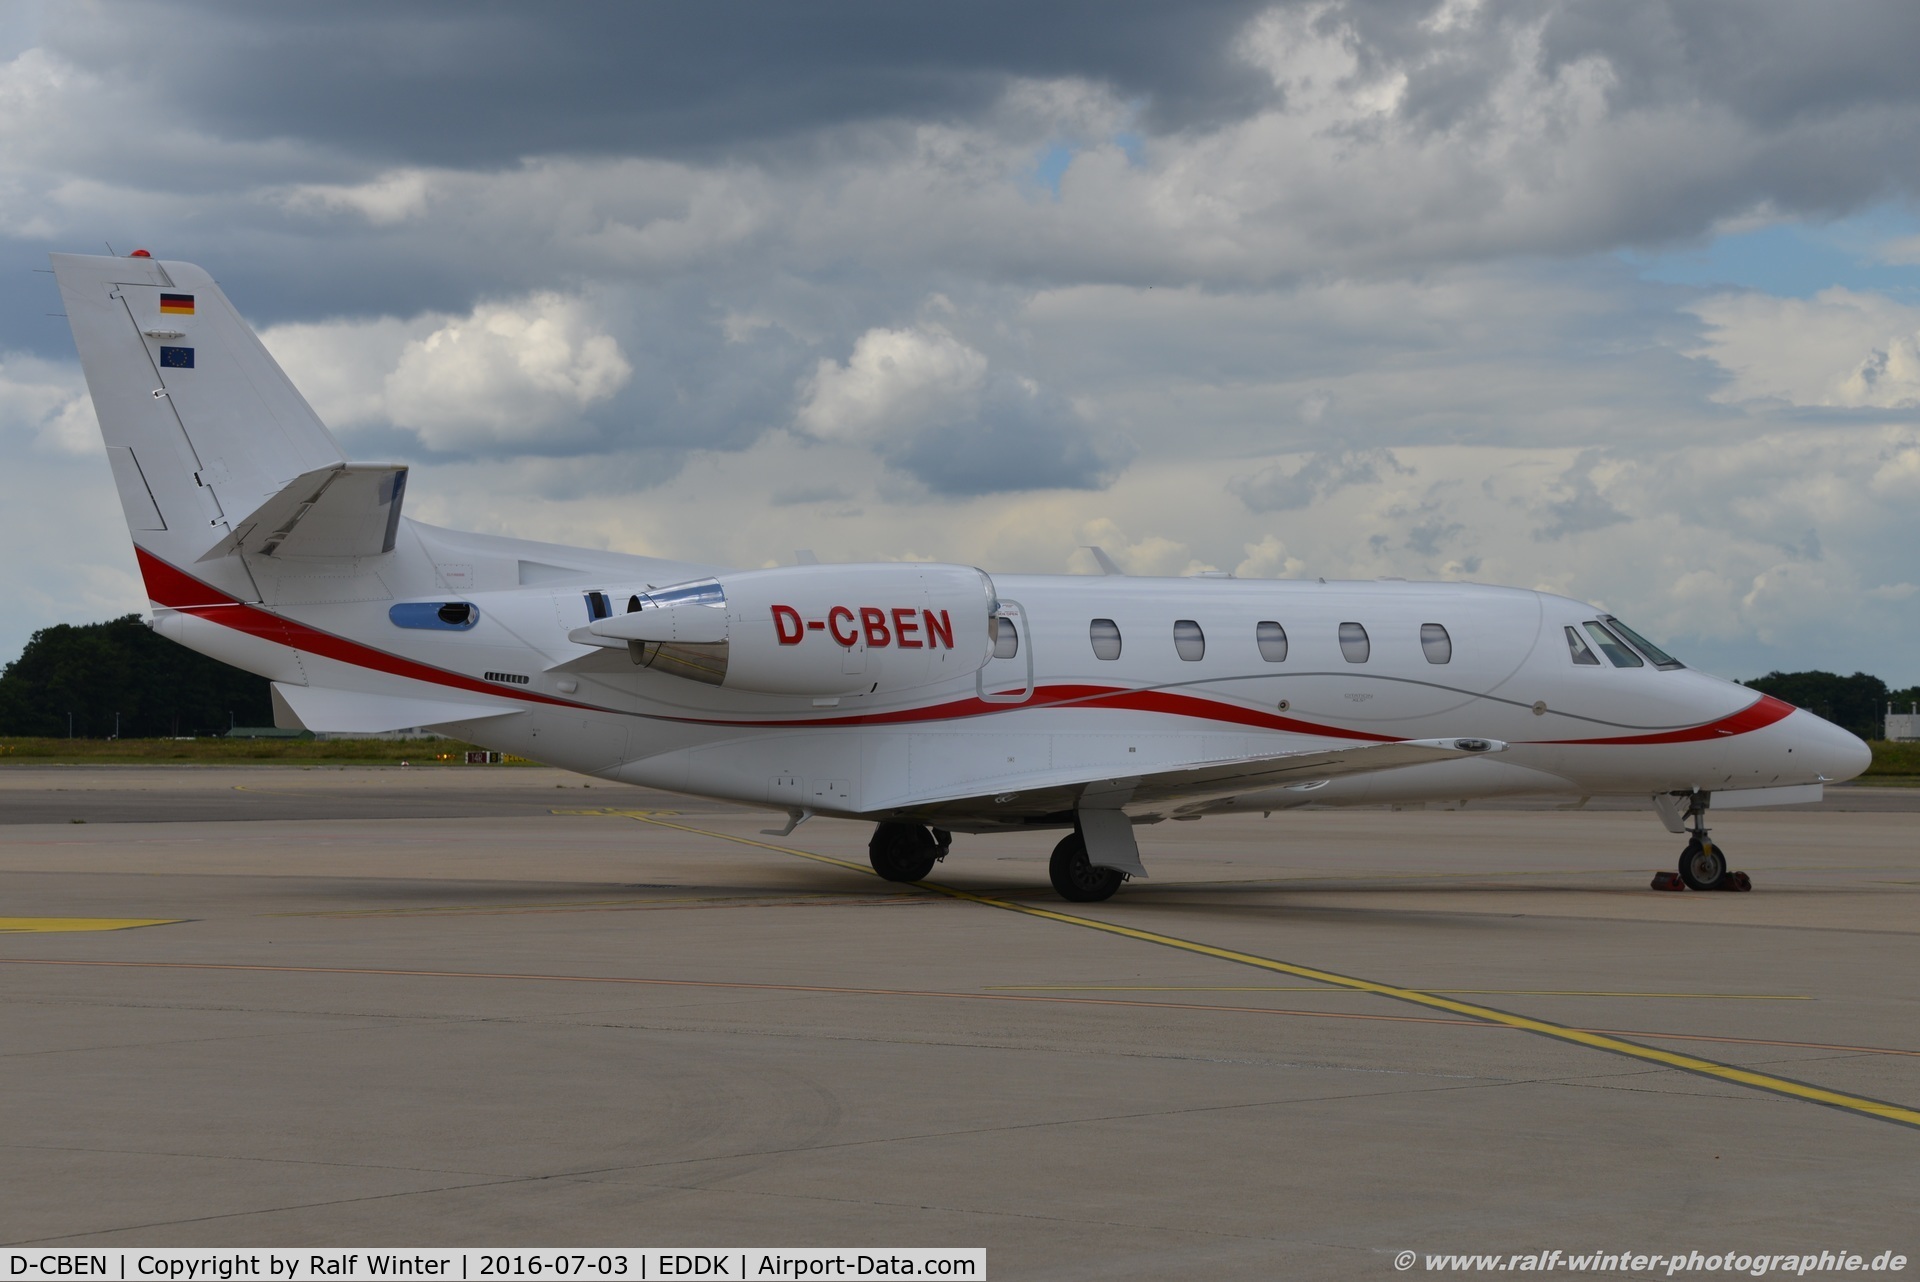 D-CBEN, 2011 Cessna 560XL Citation XLS C/N 560-6089, Cessna 560XL Citation XLS+ - WUE Adolf Wuerth GmbH - 5606089 - D-CBEN - 03.07.2016 - CGN